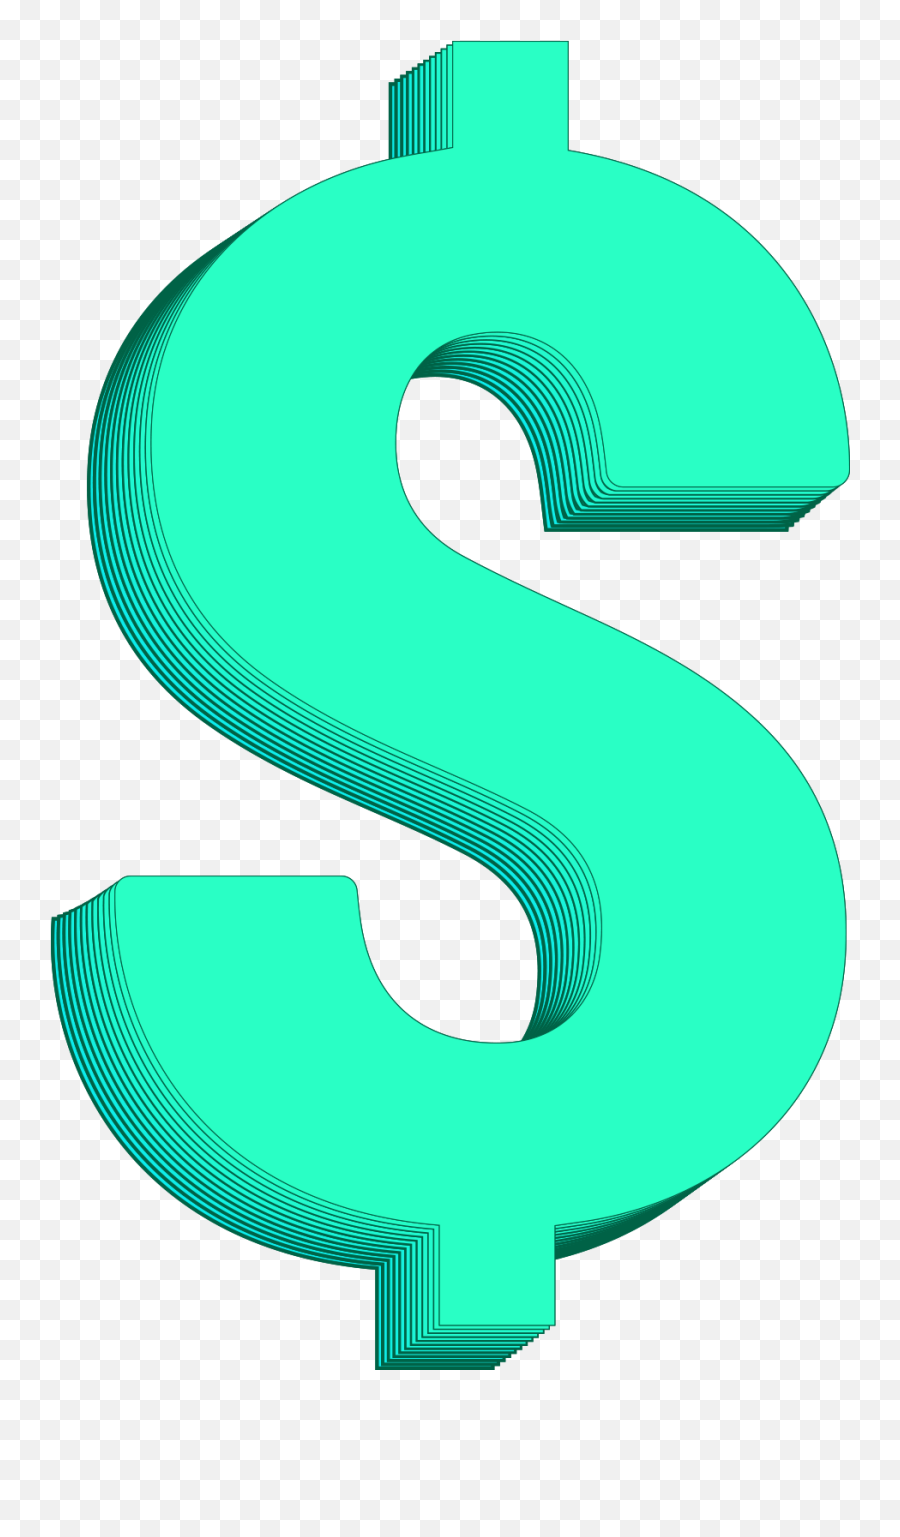 Dollar Symbol Png Image Free Download - Dollar,Dollar Symbol Png